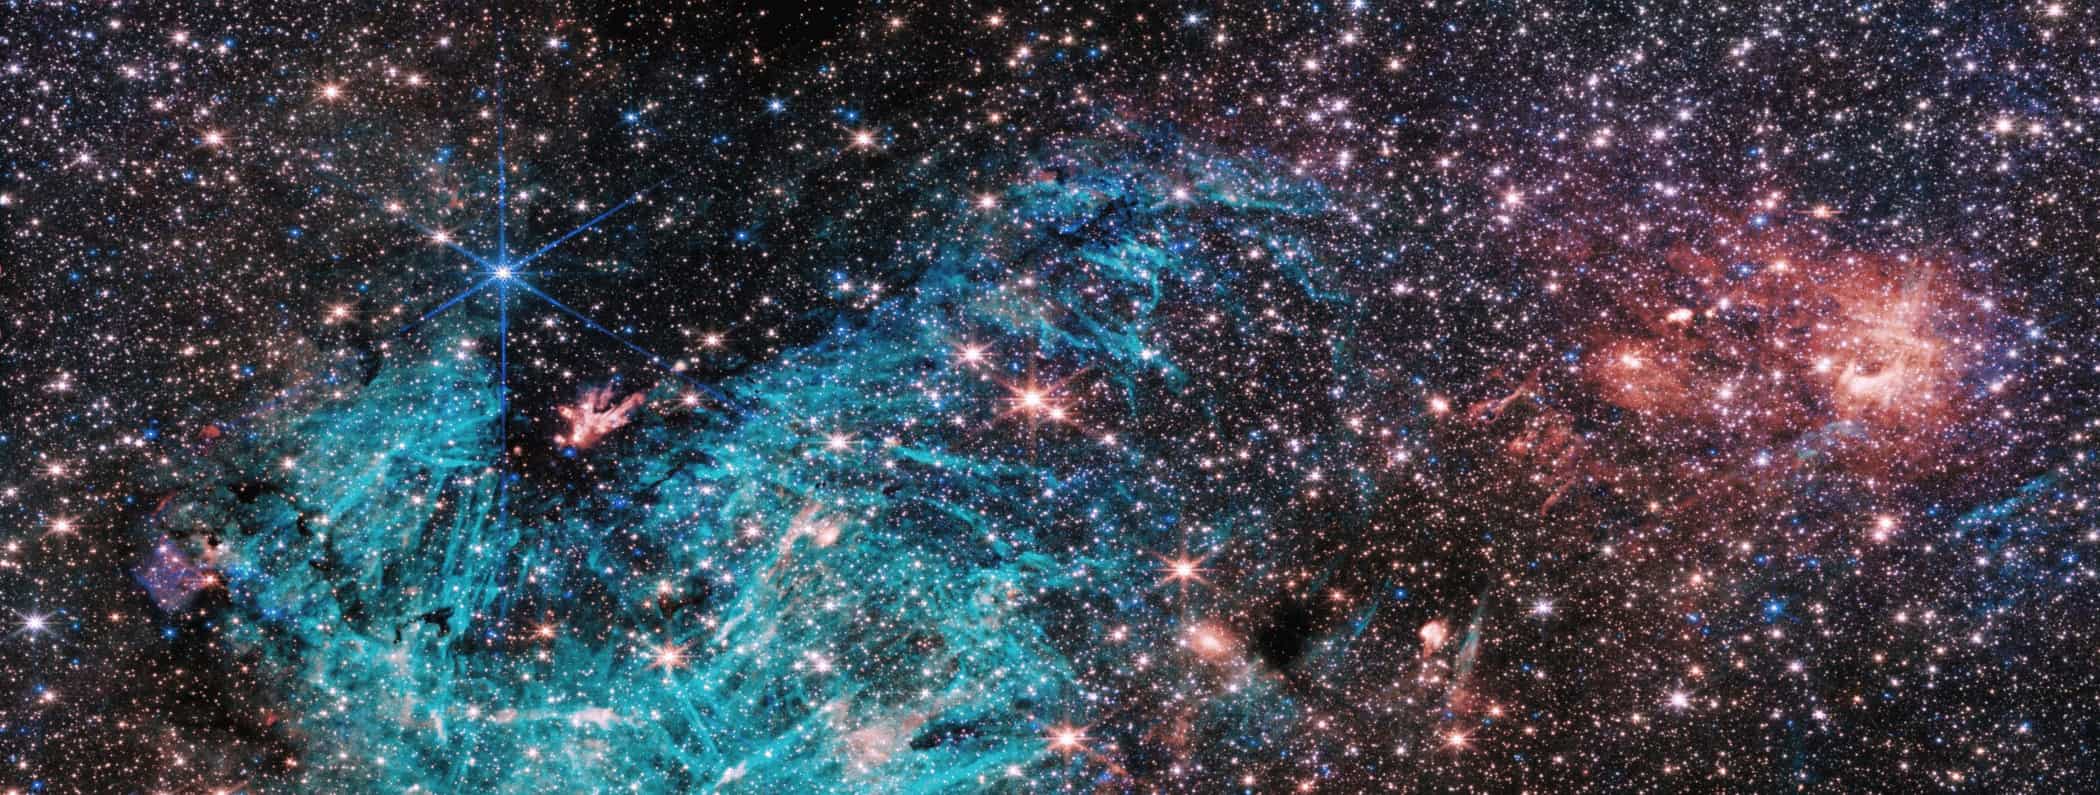 ジェイムズ・ウェッブ宇宙望遠鏡が描き出す、天の川銀河中心の神秘的な輝きと未知の構造